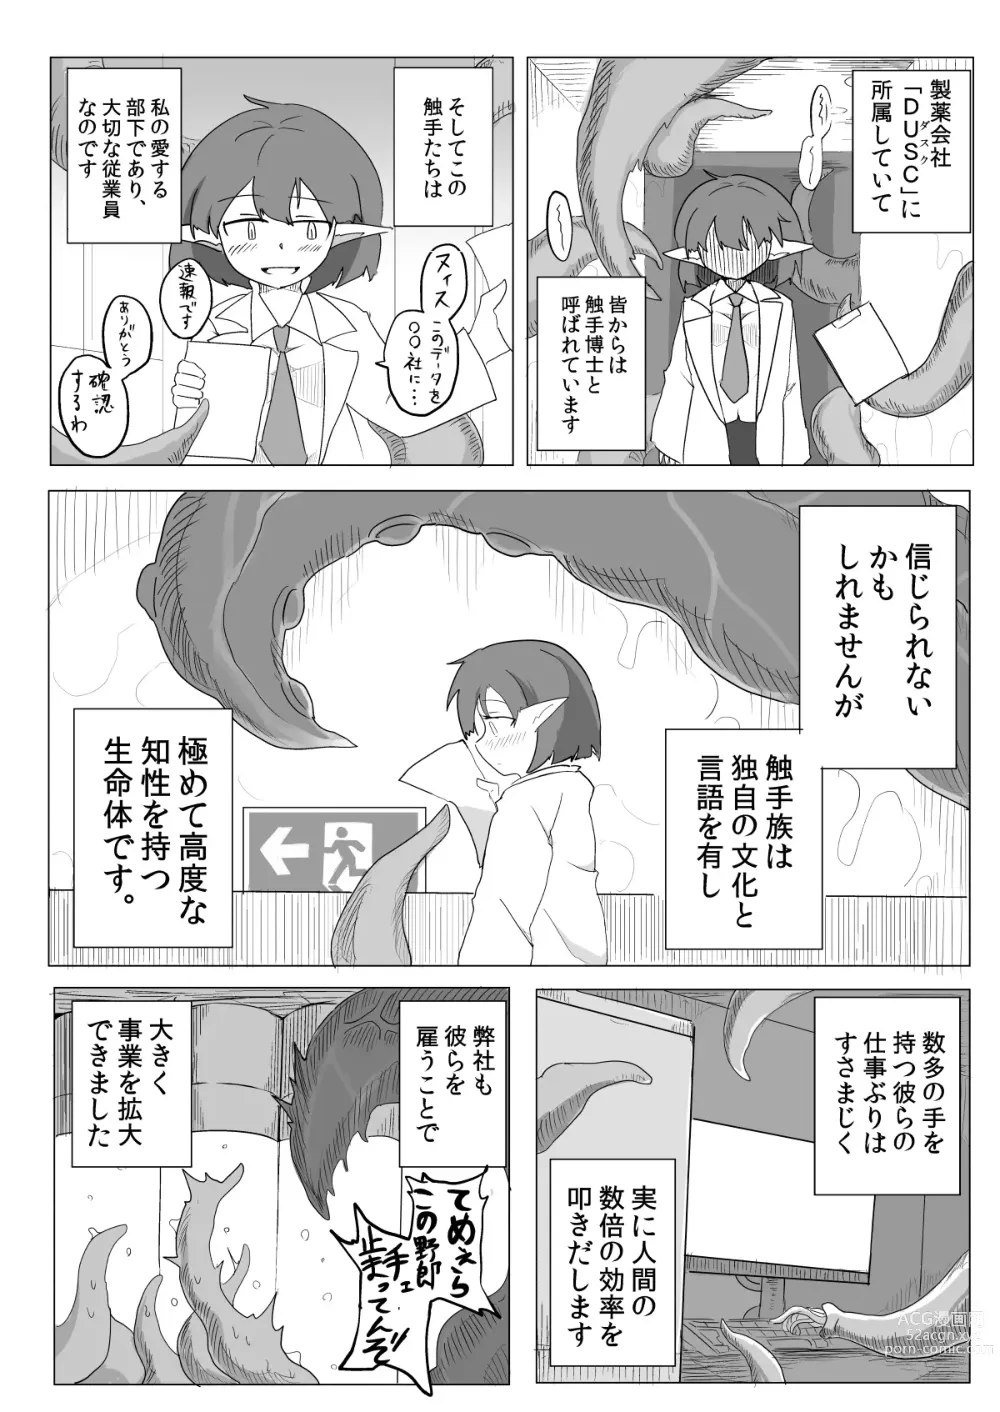 Page 4 of doujinshi Watashi to Shokushu no Kyuuryoubi